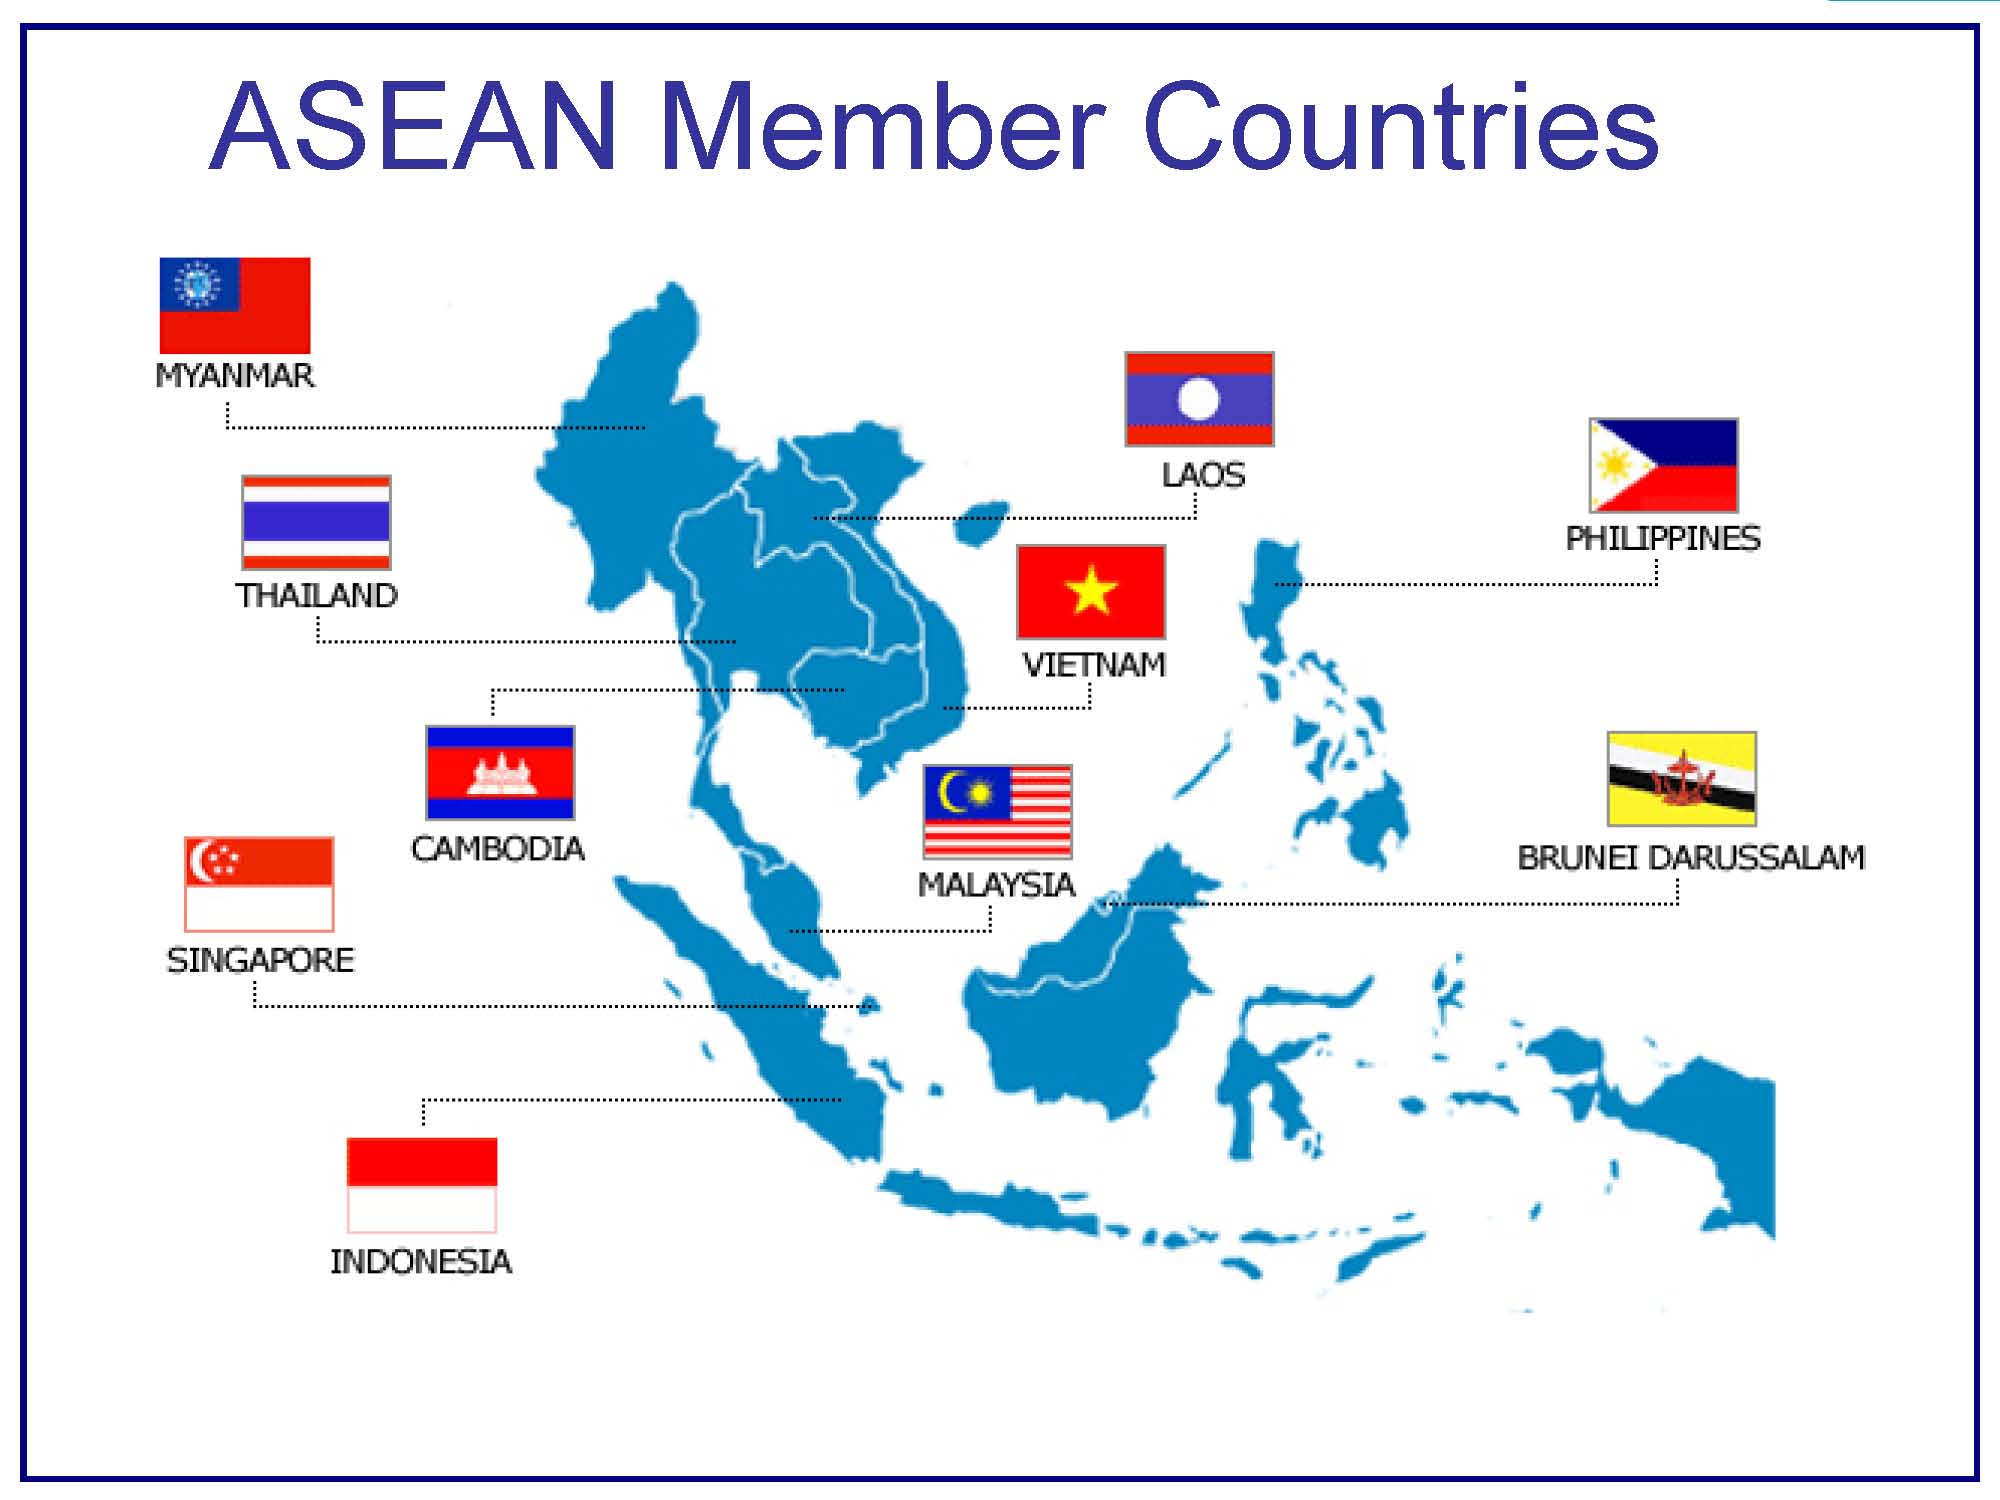 L'Asie du sud-est se dote d'une Communauté économique de l'Asean